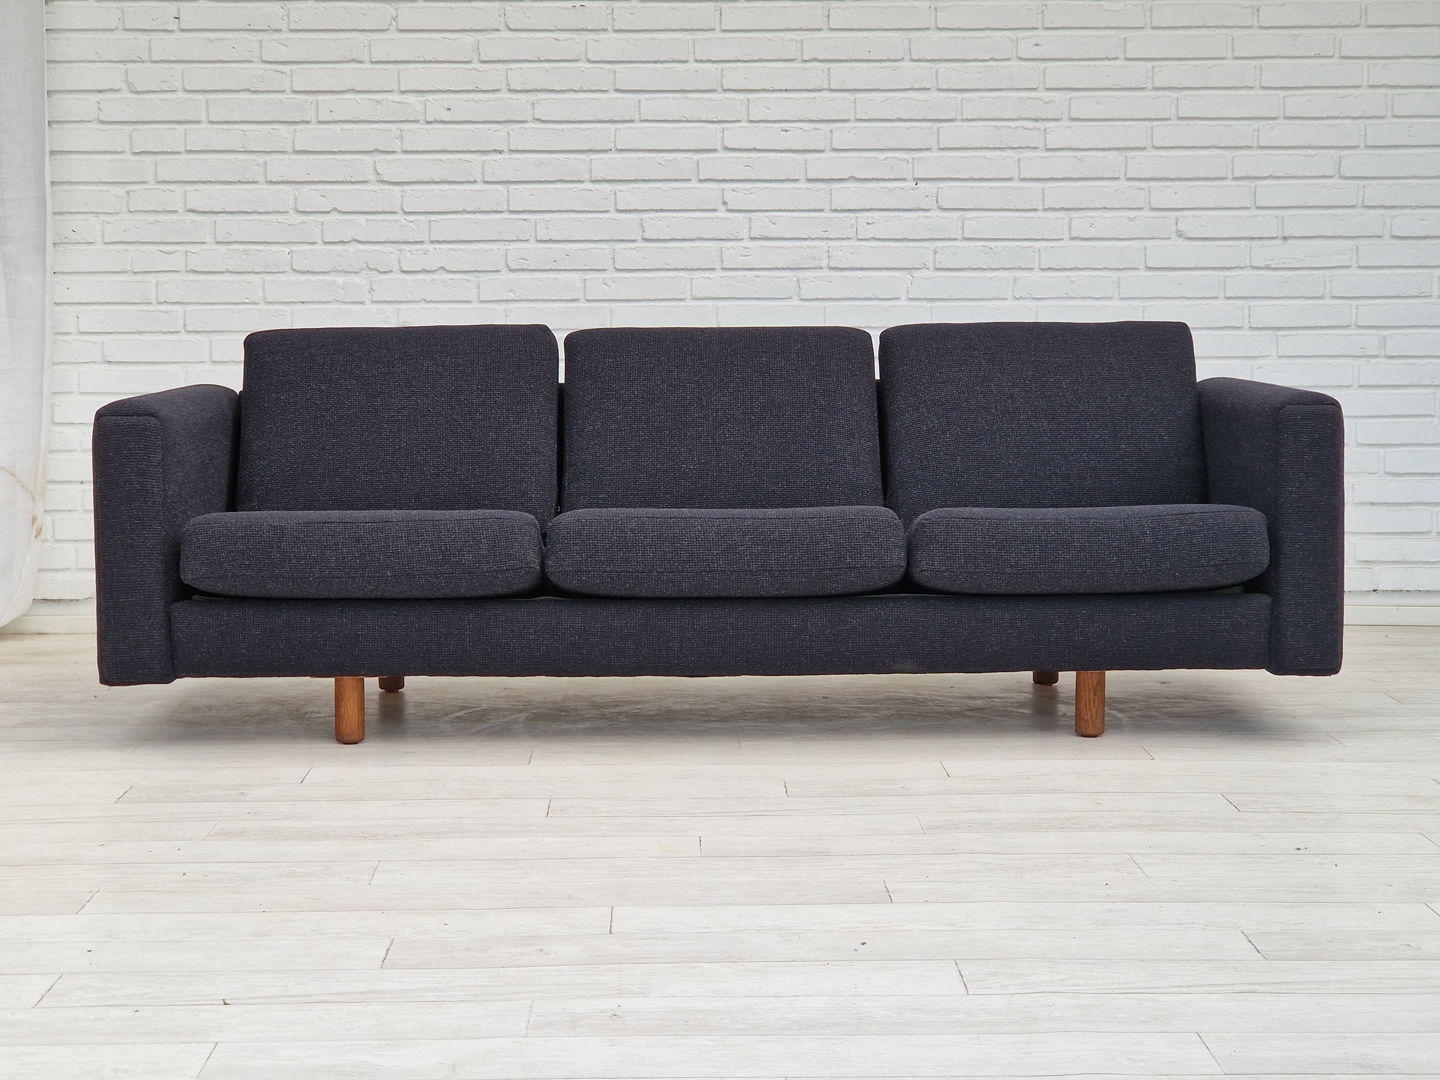 1970s, Danish design by H.J. Wegner, model GE 300, reupholstered sofa.